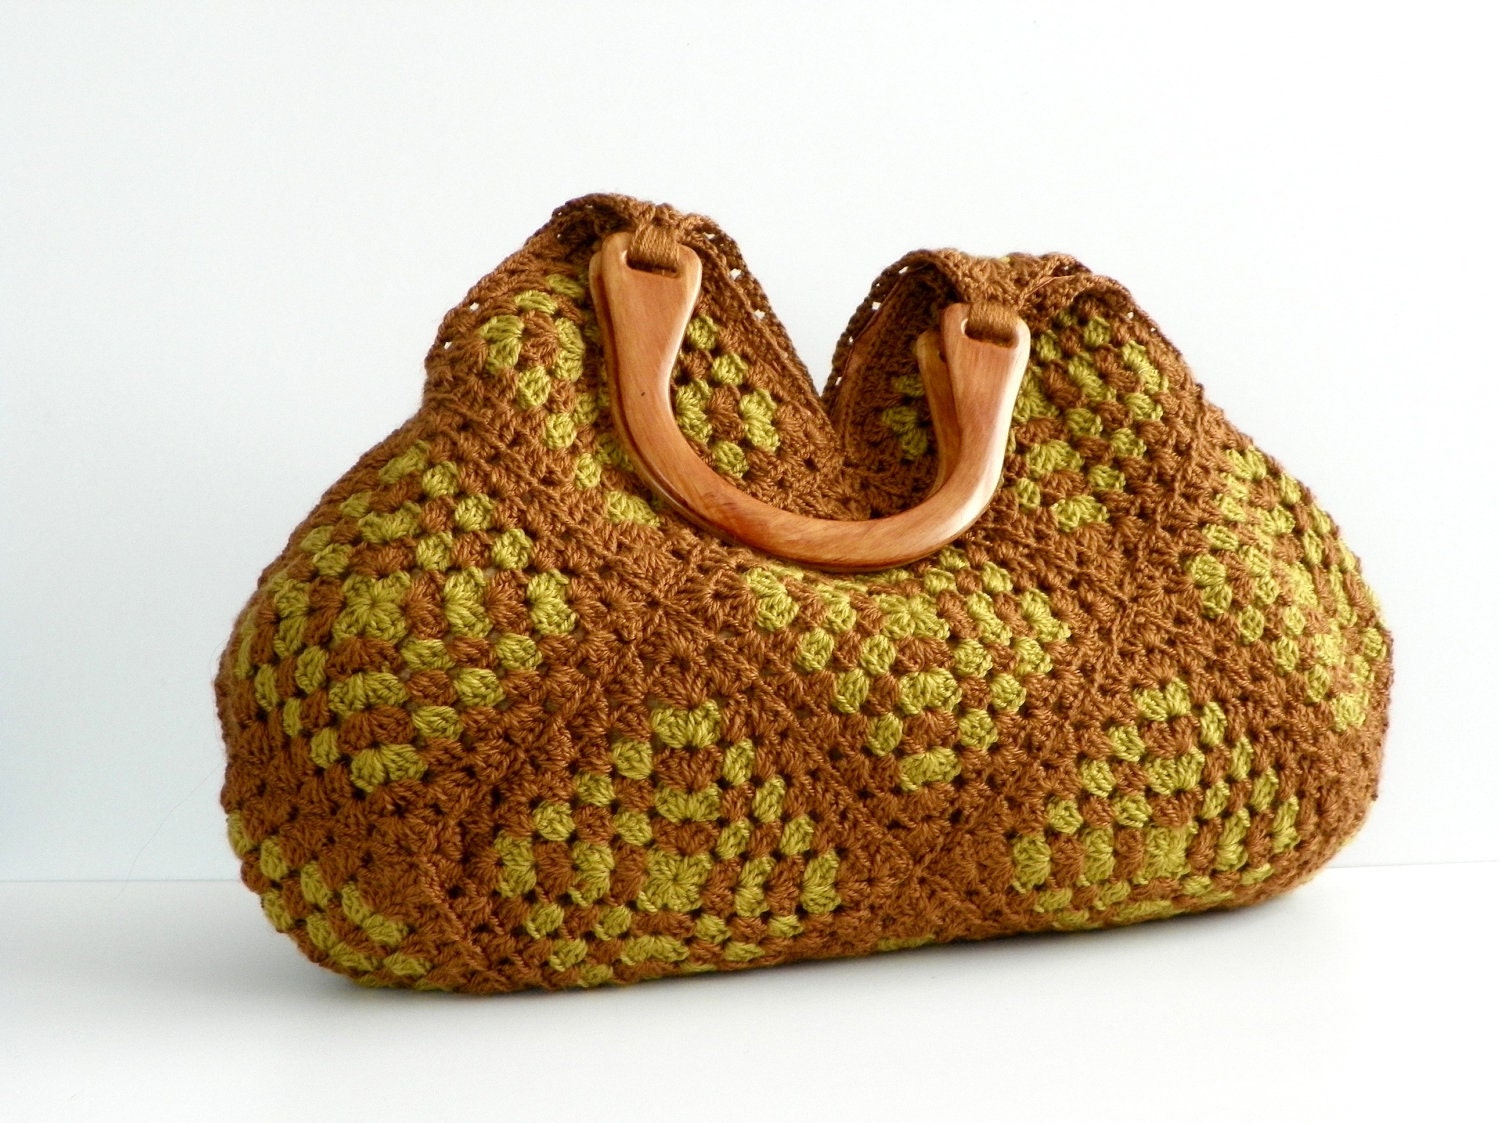 NzLbags Новый - Летняя сумка сумка афганской вязание крючком, сумки - Сумка Nr-0185